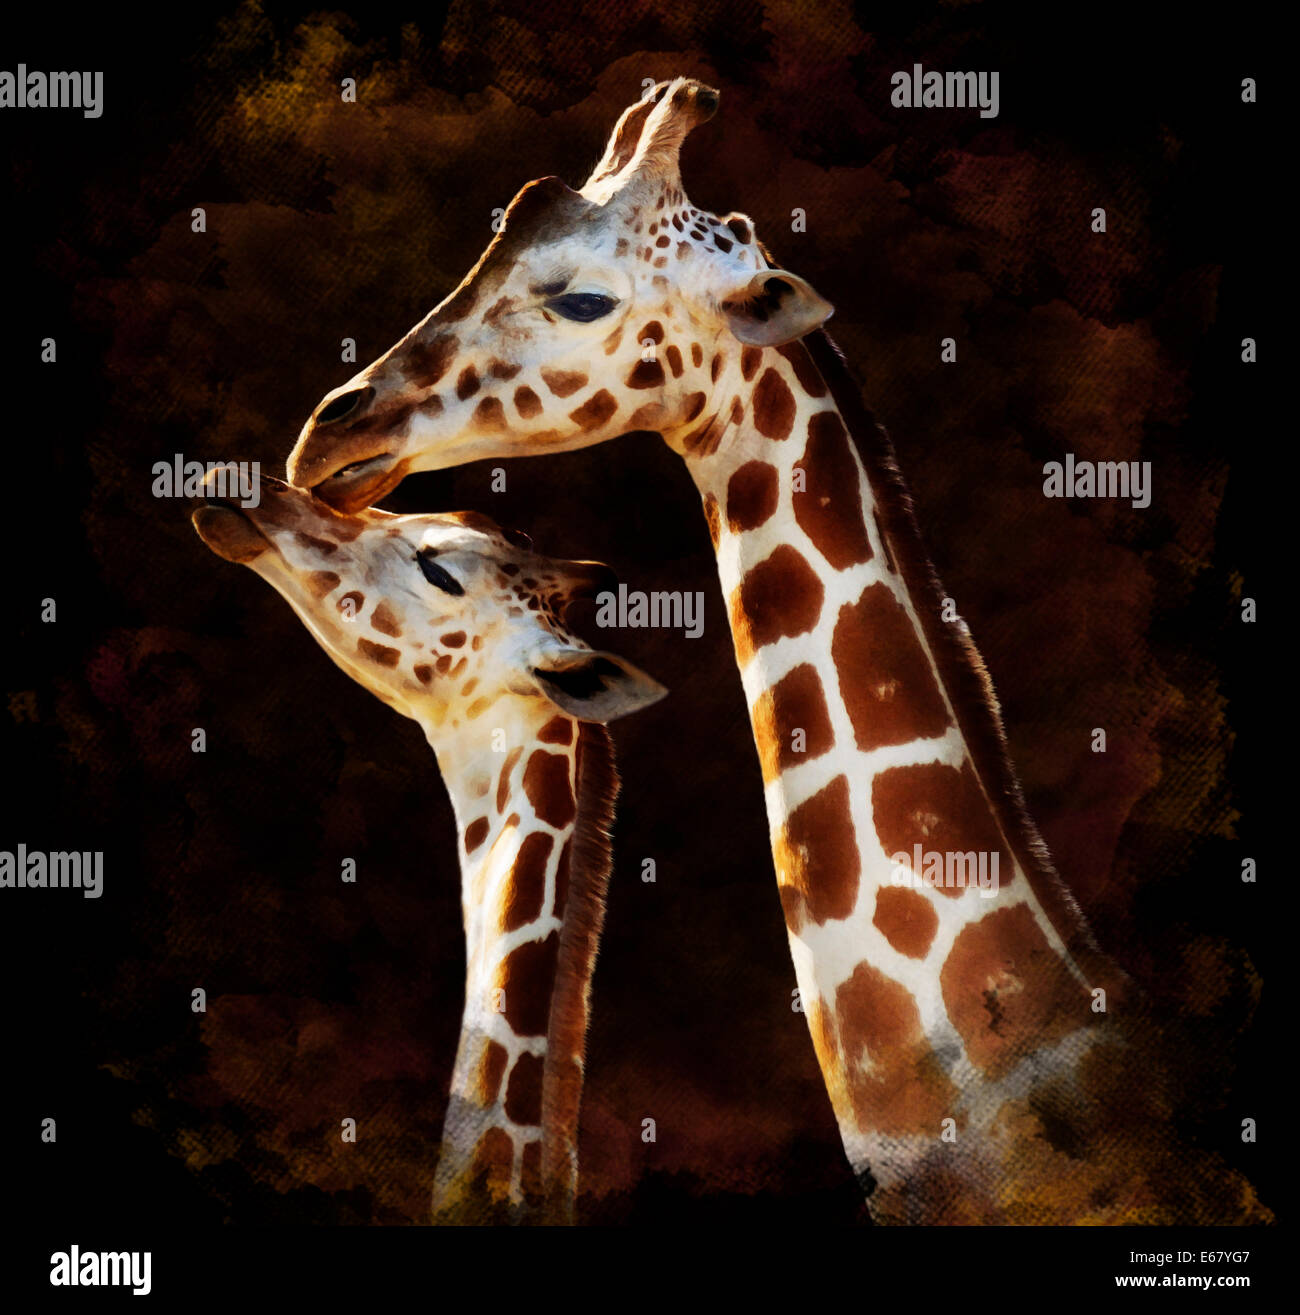 Aquarelle peinture digitale de la mère et du bébé girafes sur fond sombre Banque D'Images